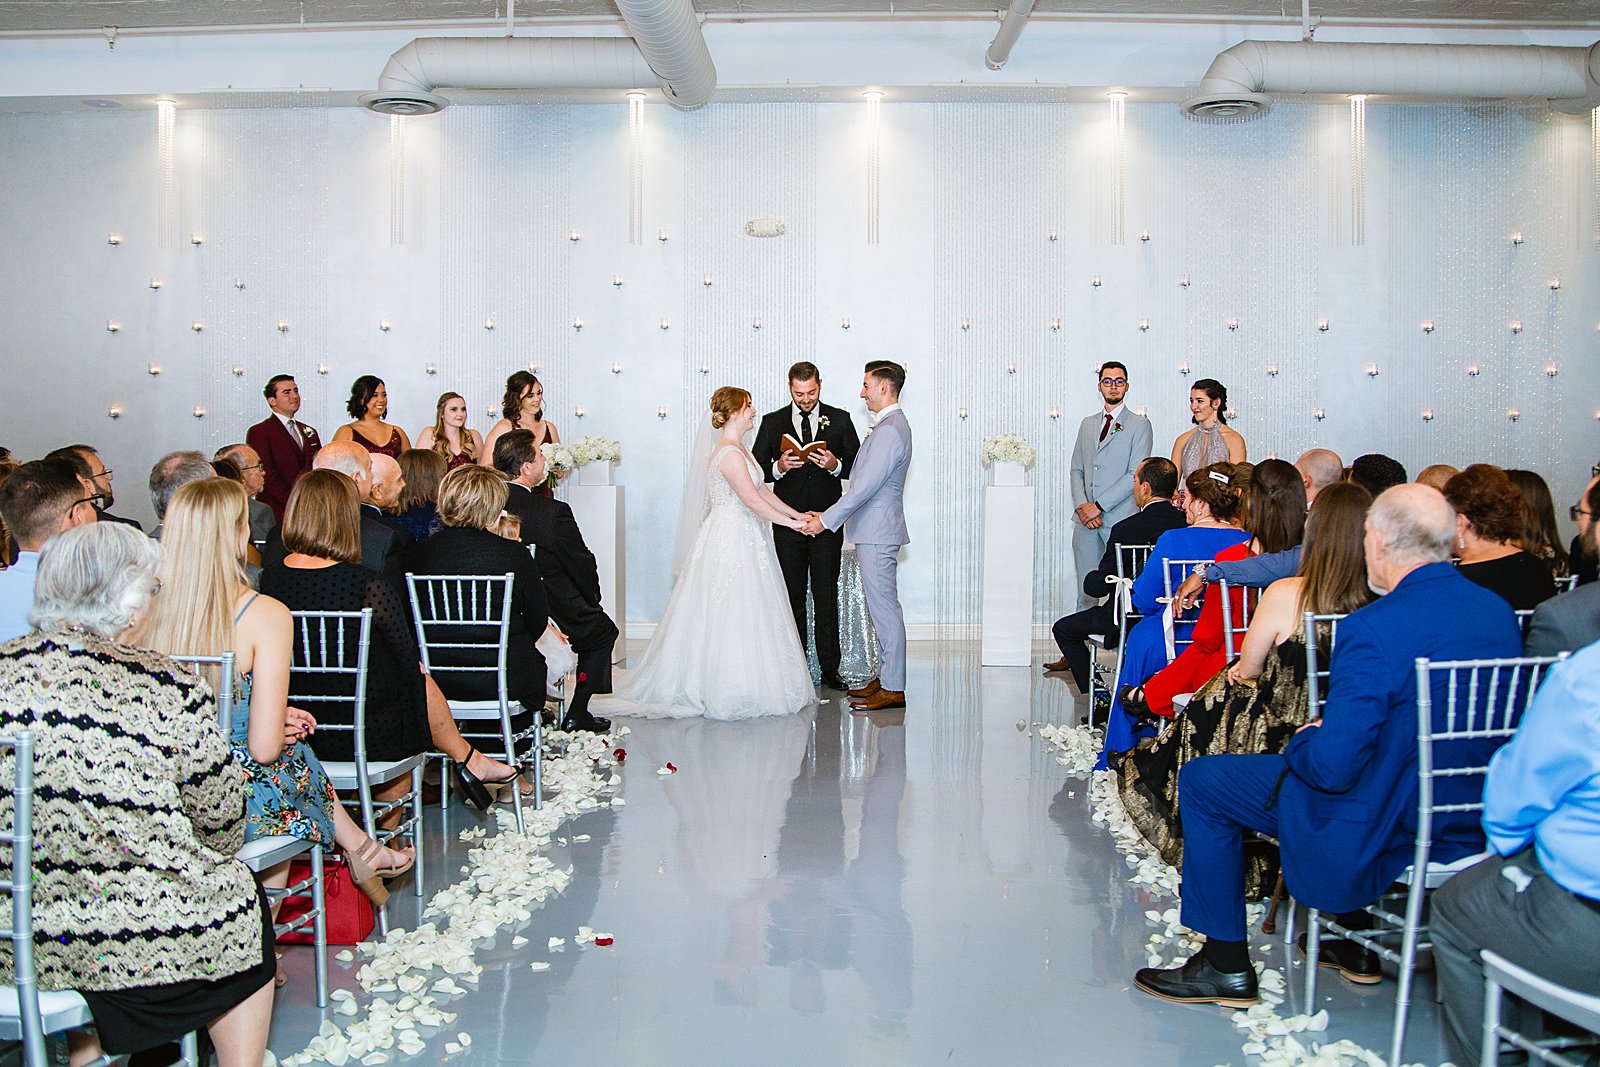 Wedding ceremony at SoHo63 by Phoenix wedding photographer PMA Photography.